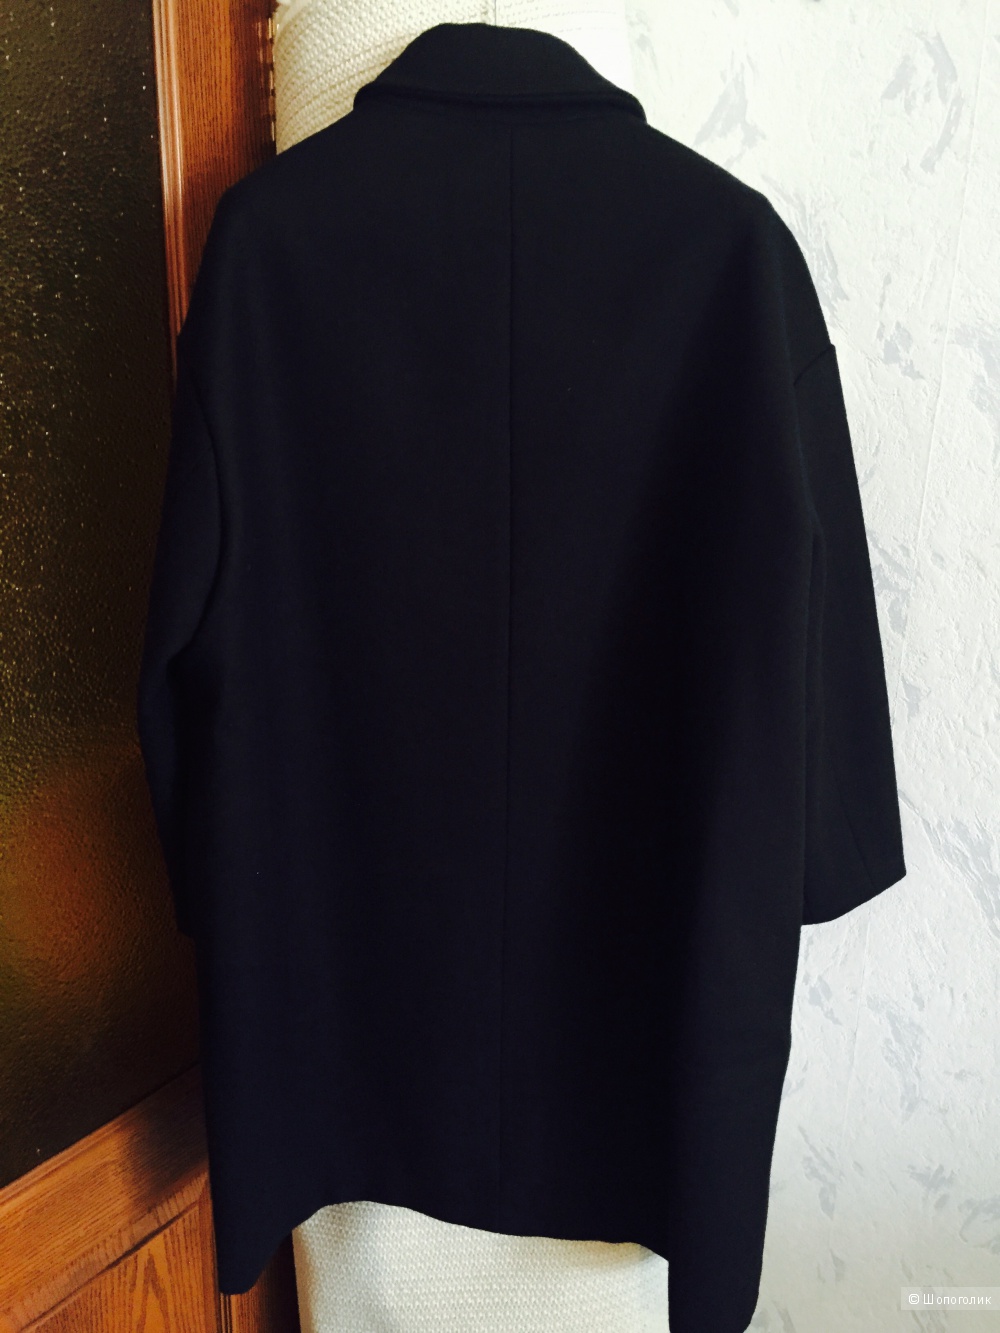 Пальто Barena Venezia oversize, черное, размер 44,46,48ру